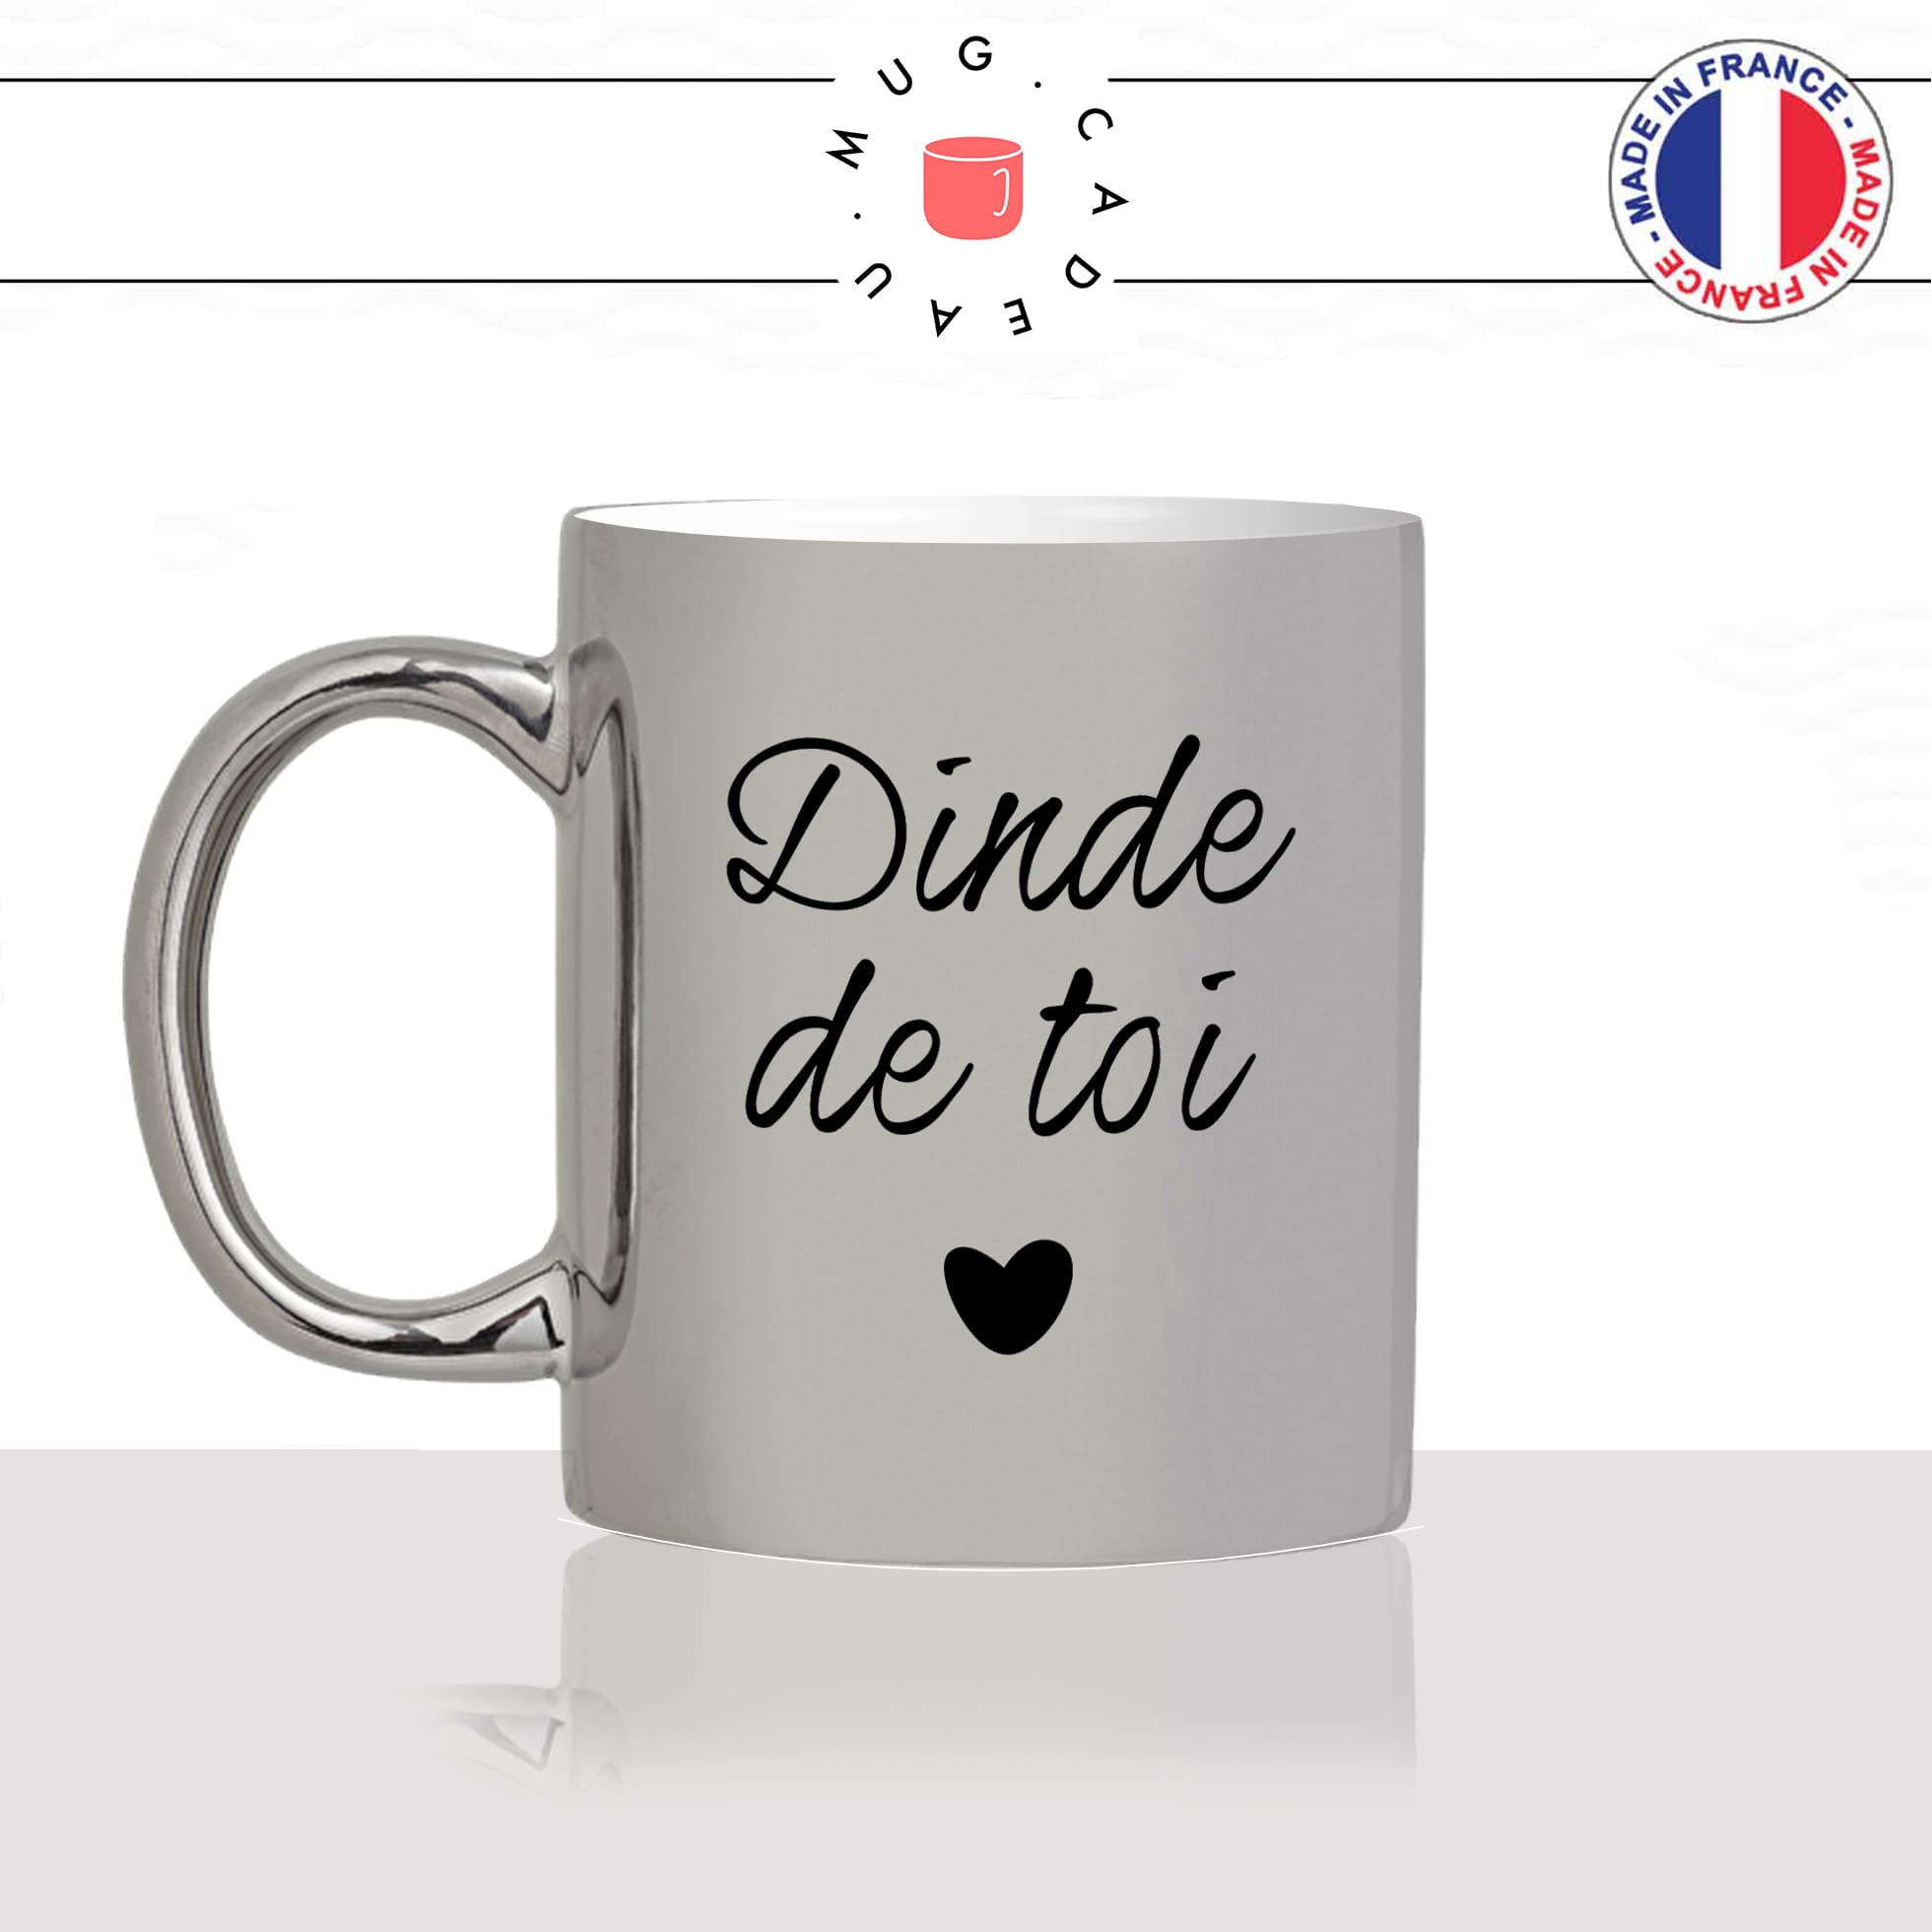 mug-tasse-argenté-argent-gris-silver-dinde-de-toi-dingue-amour-couple-amoureux-homme-femme-humour-fun-cool-idée-cadeau-original